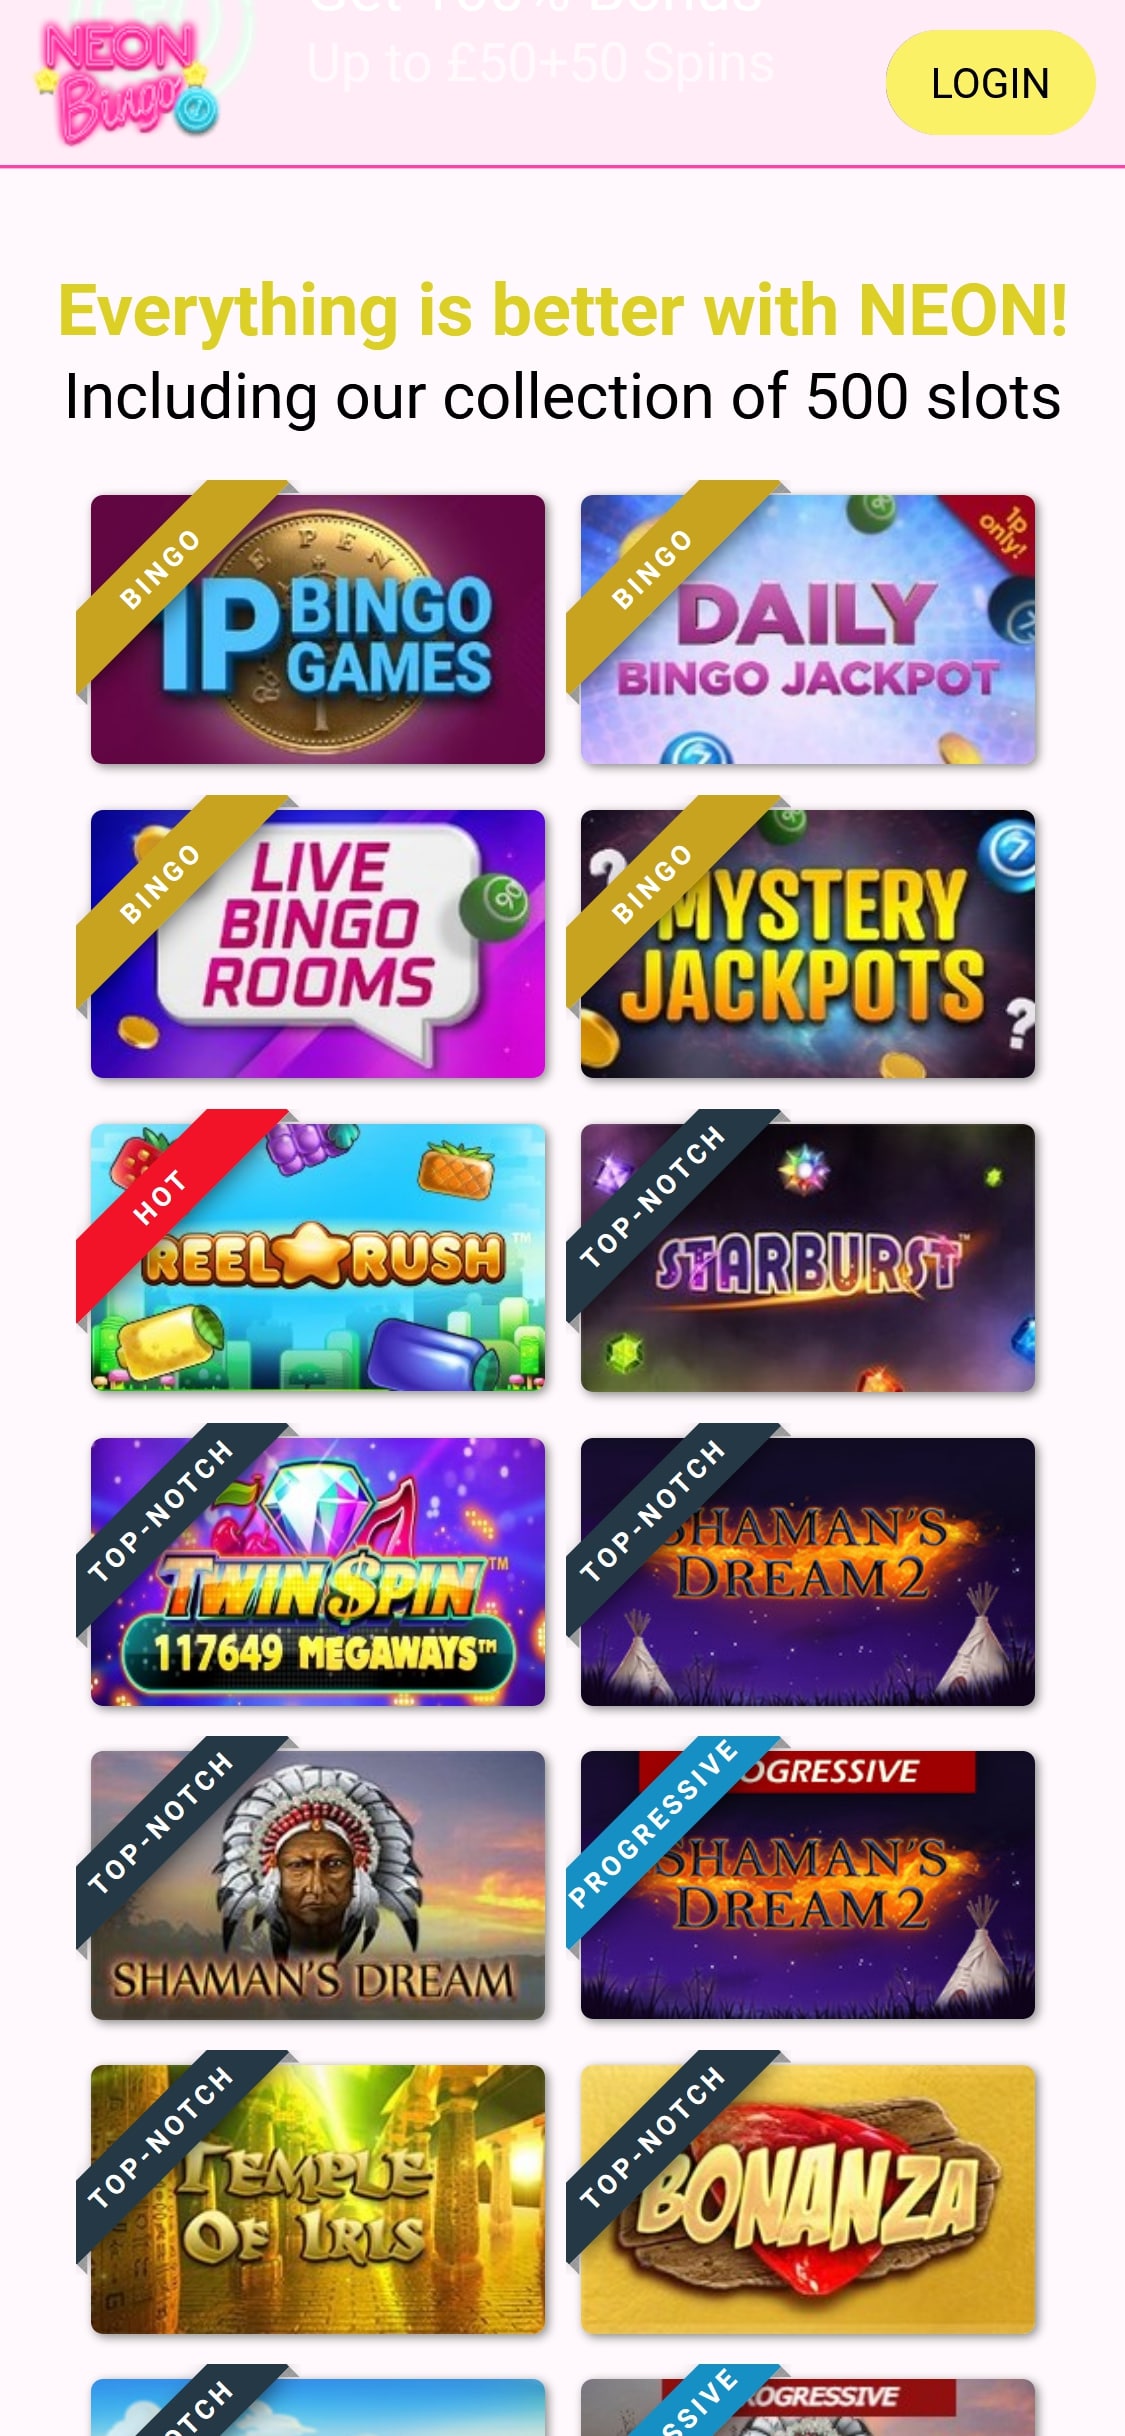 Neon Bingo Casino Mobile Games Review